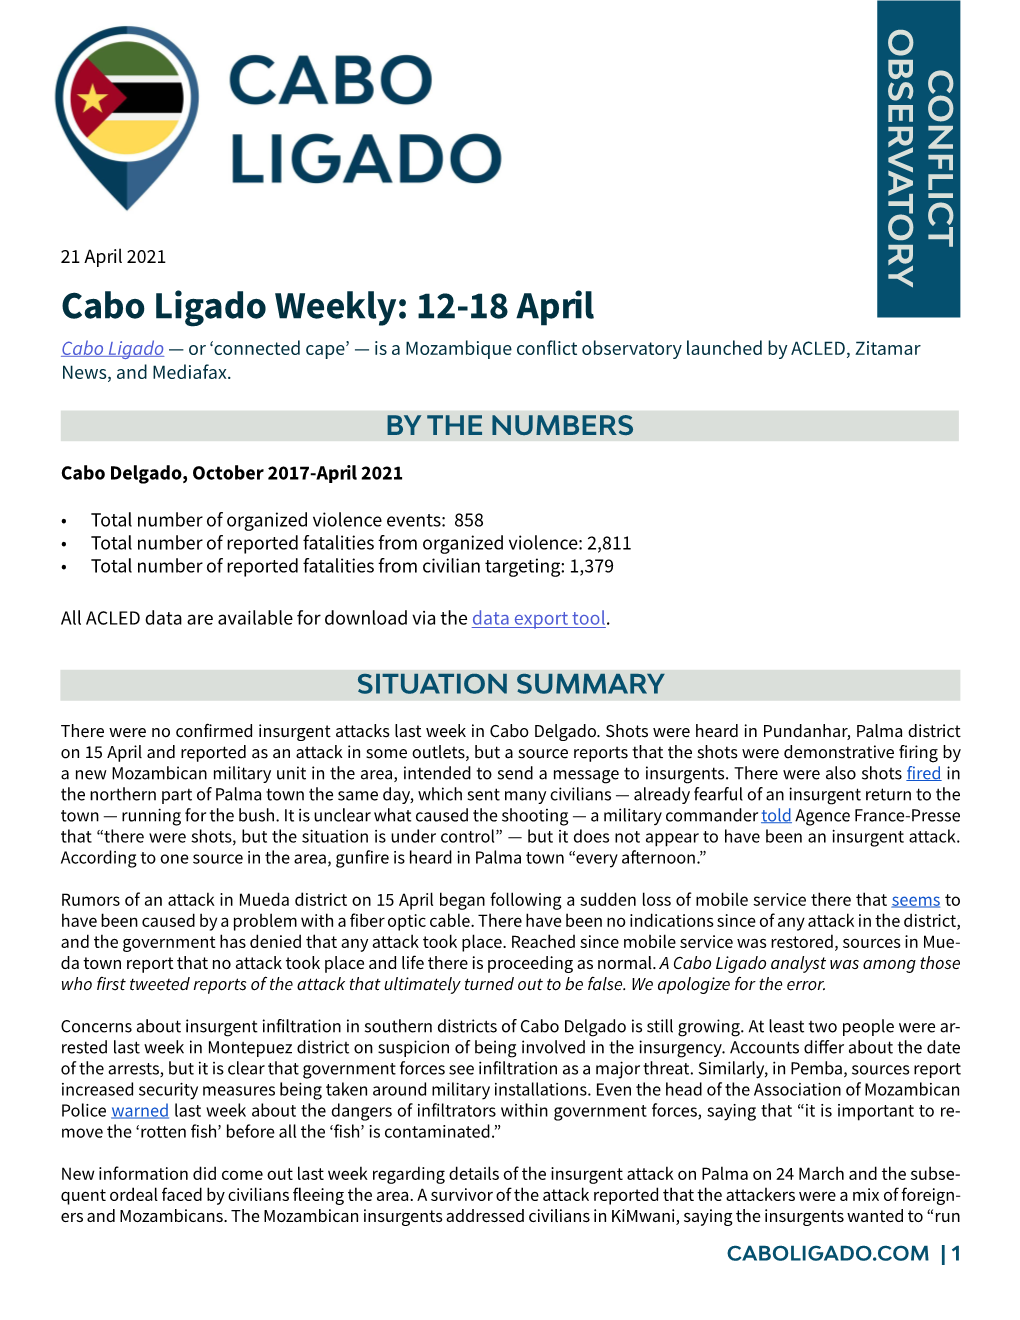 Cabo Ligado Weekly: 12-18 April